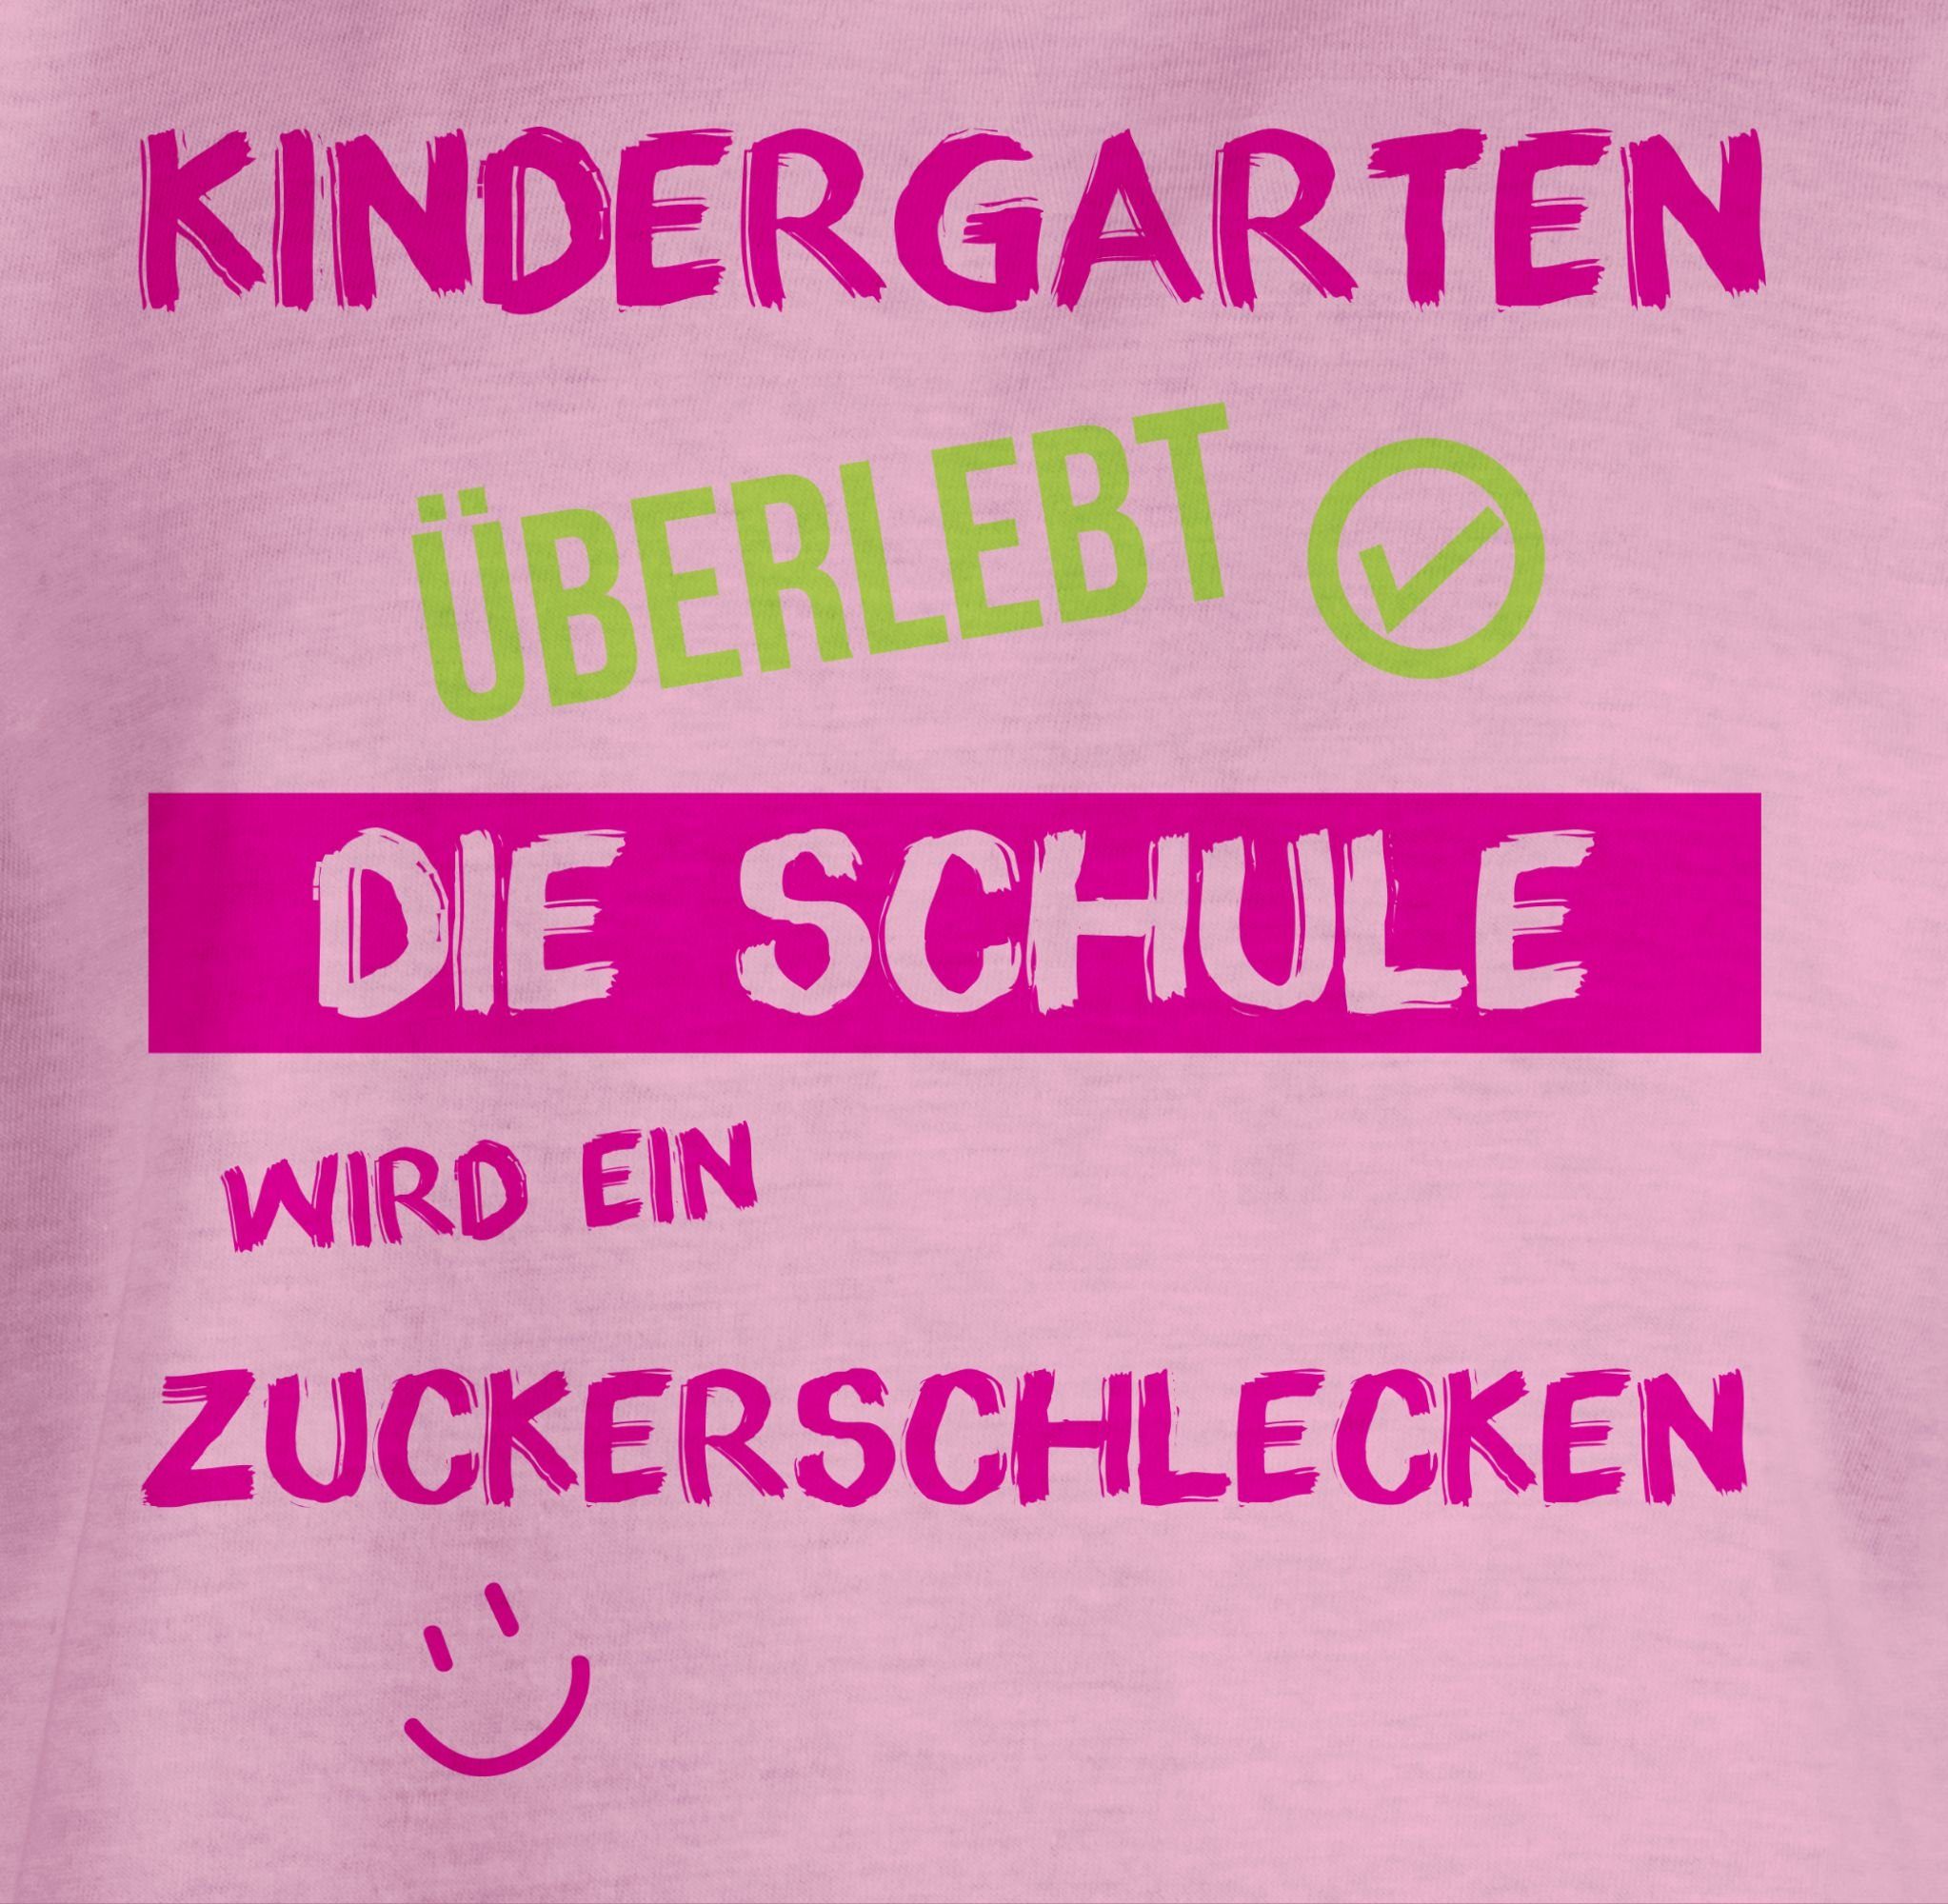 Shirtracer T-Shirt Kindergarten überlebt Rosa Einschulung Mädchen 2 rosa Emoticon